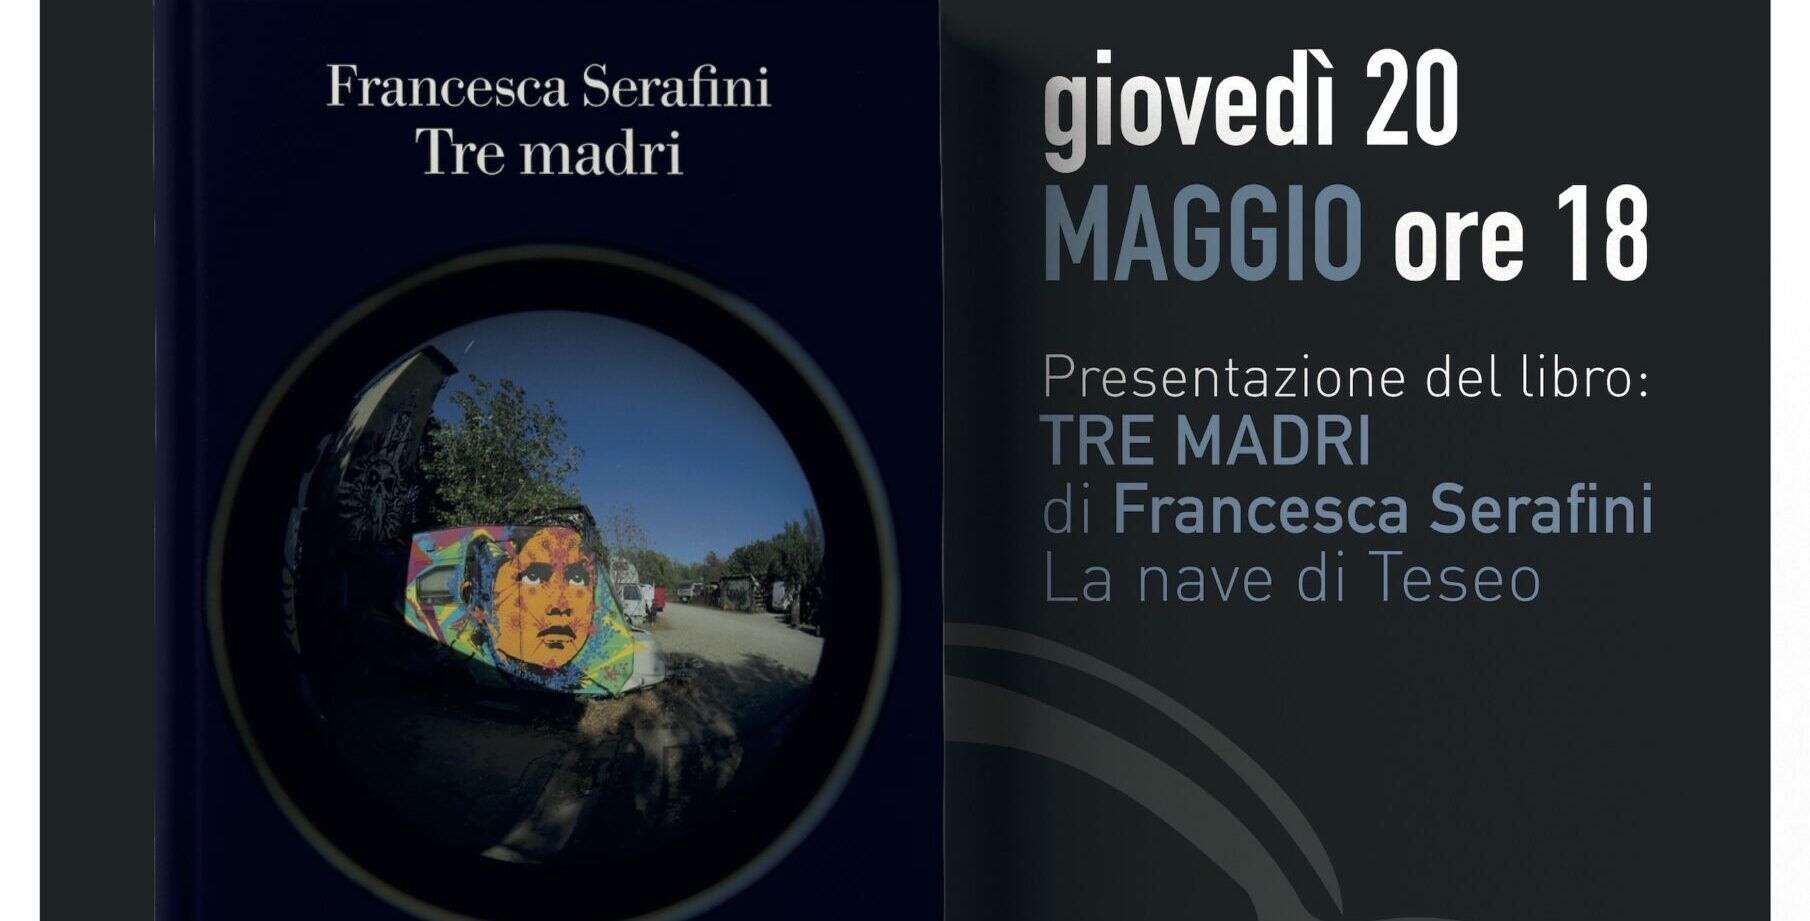 “Tre madri” di Francesca Serafini per il terzo video incontro letterario della Fondazione Sassi